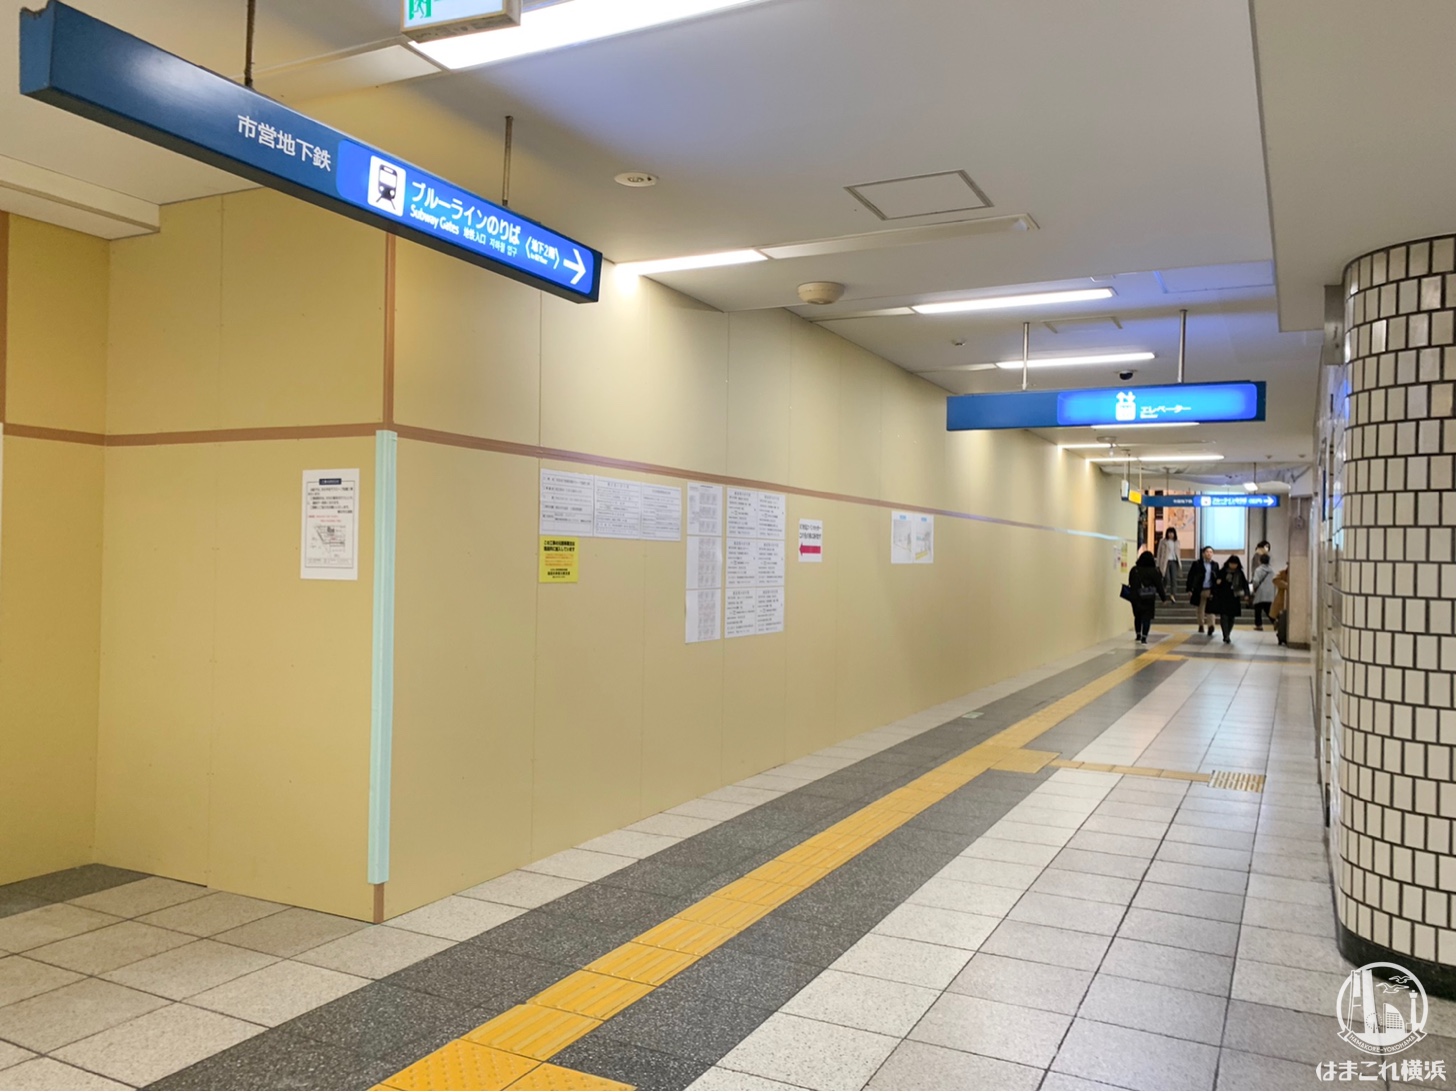 横浜駅 市営地下鉄 地下1階 スロープ新設